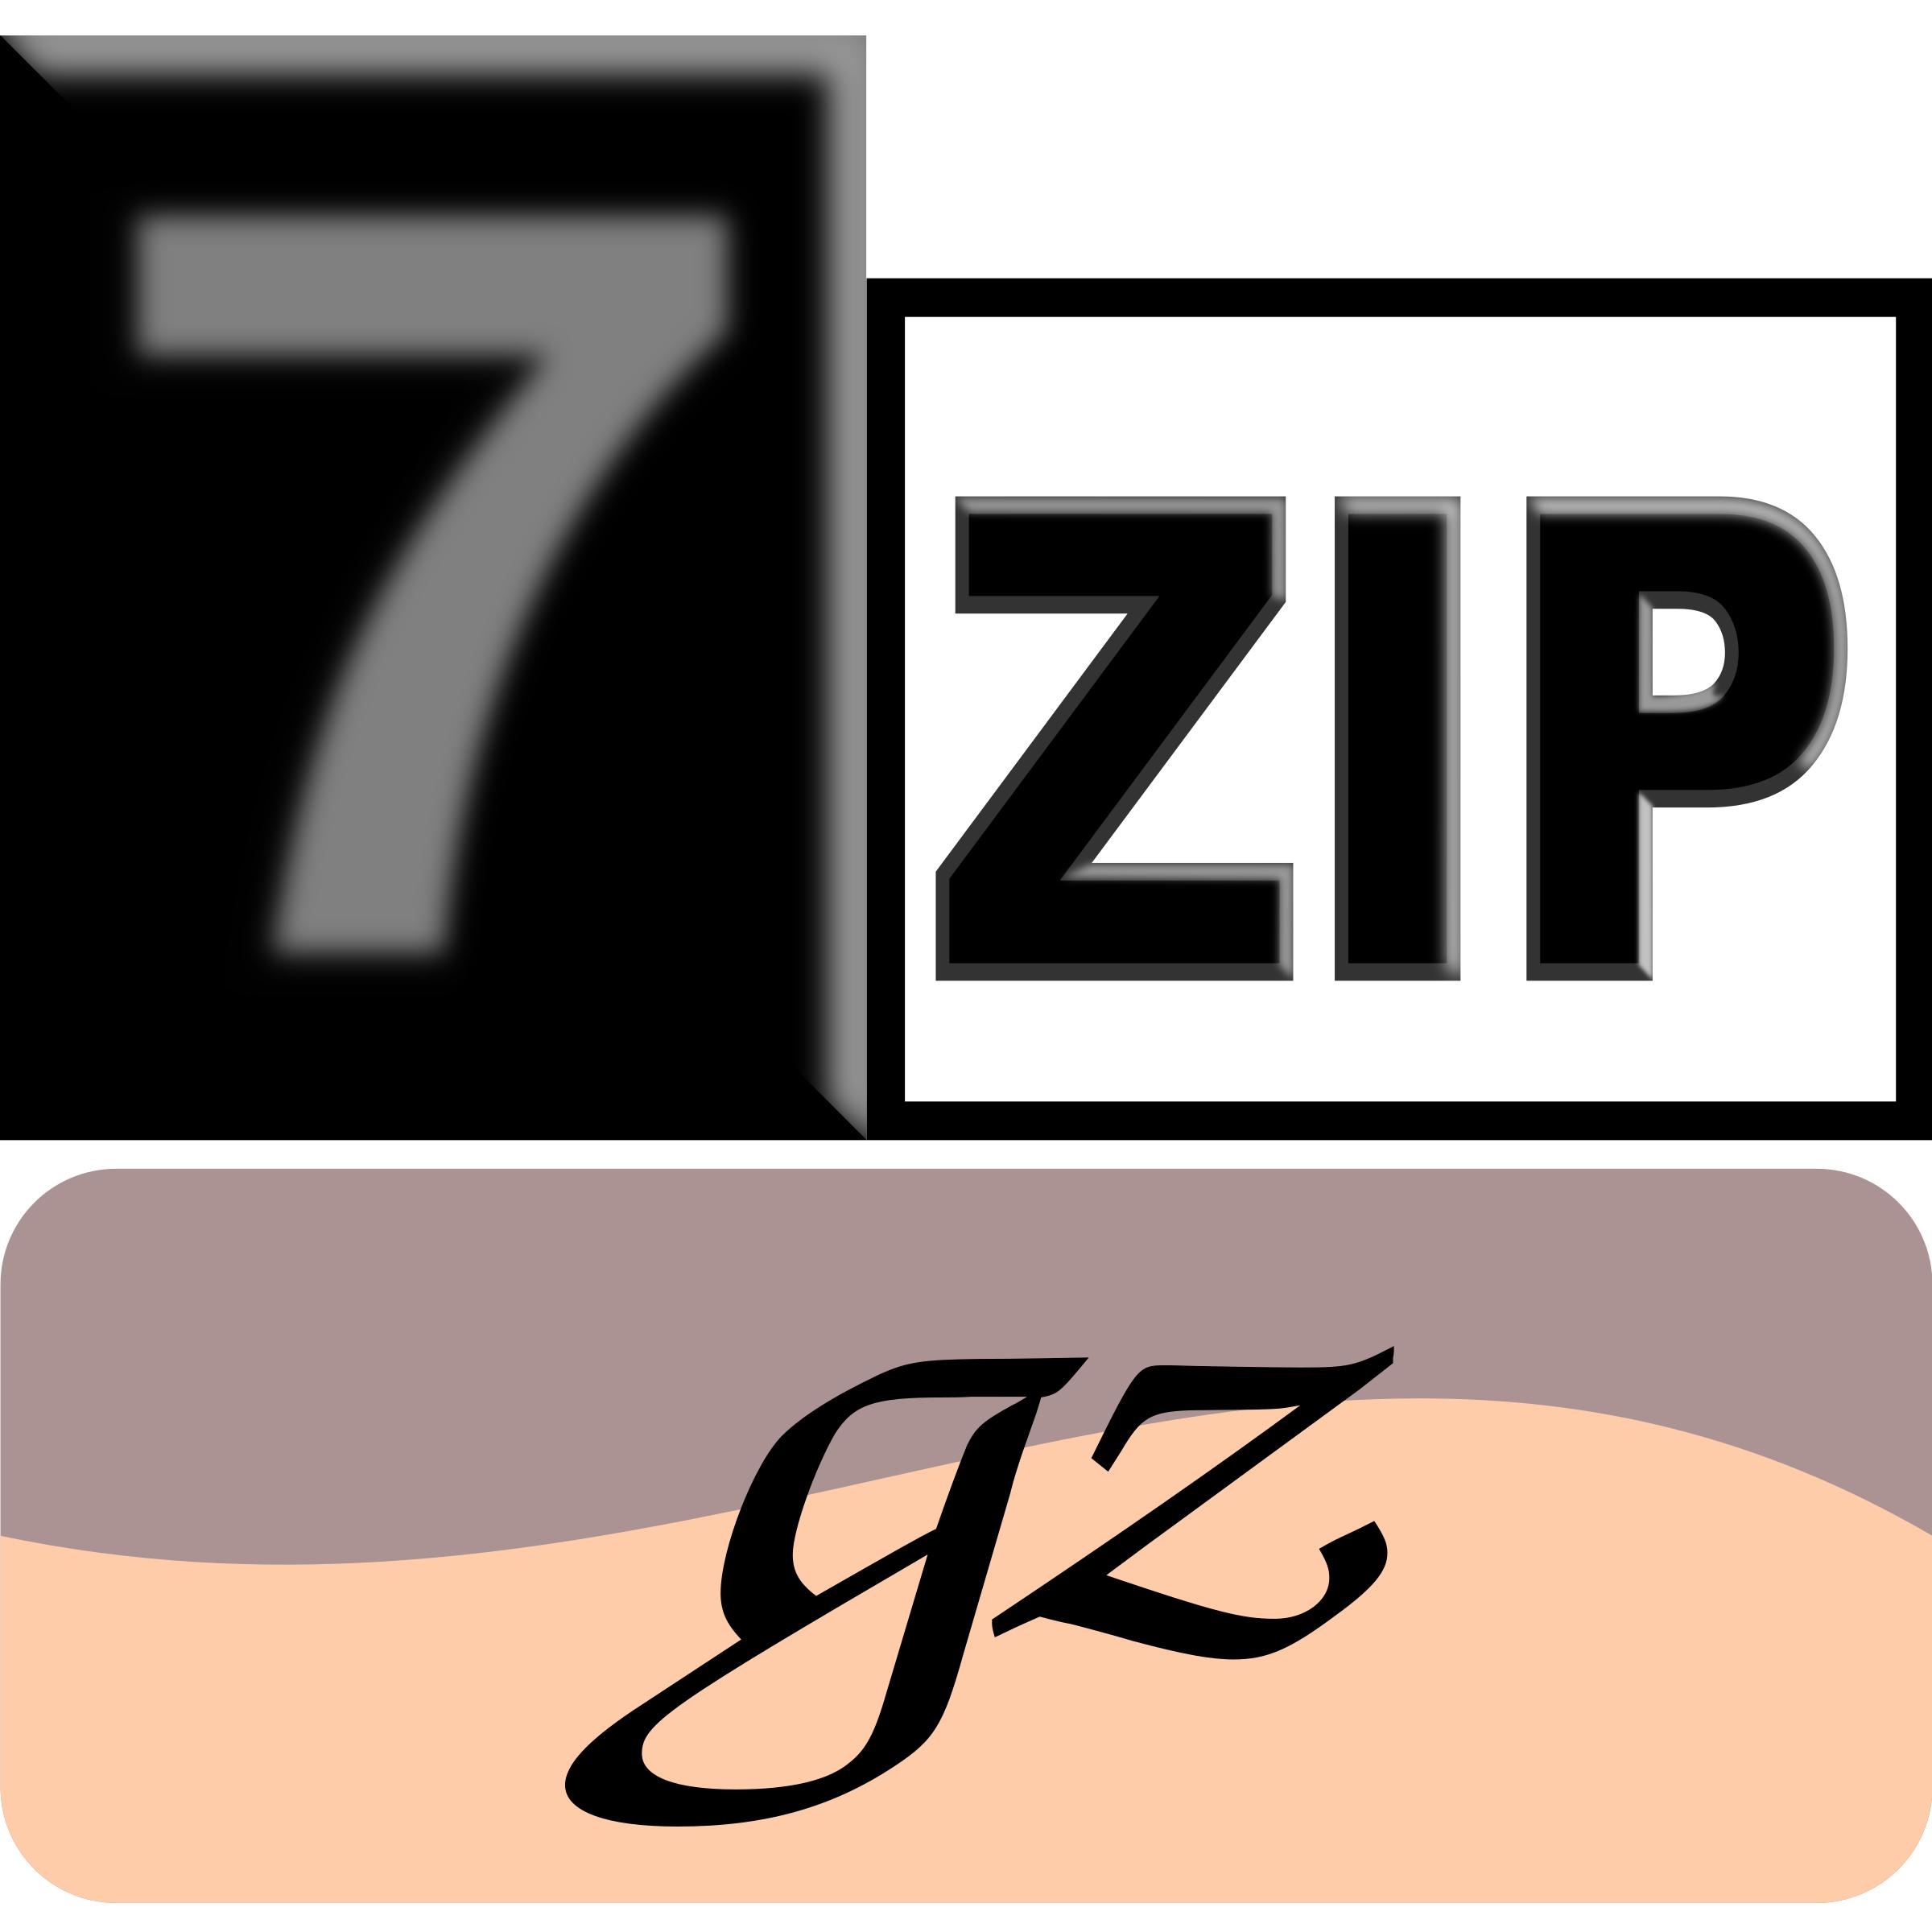 7zipClassic-gz png